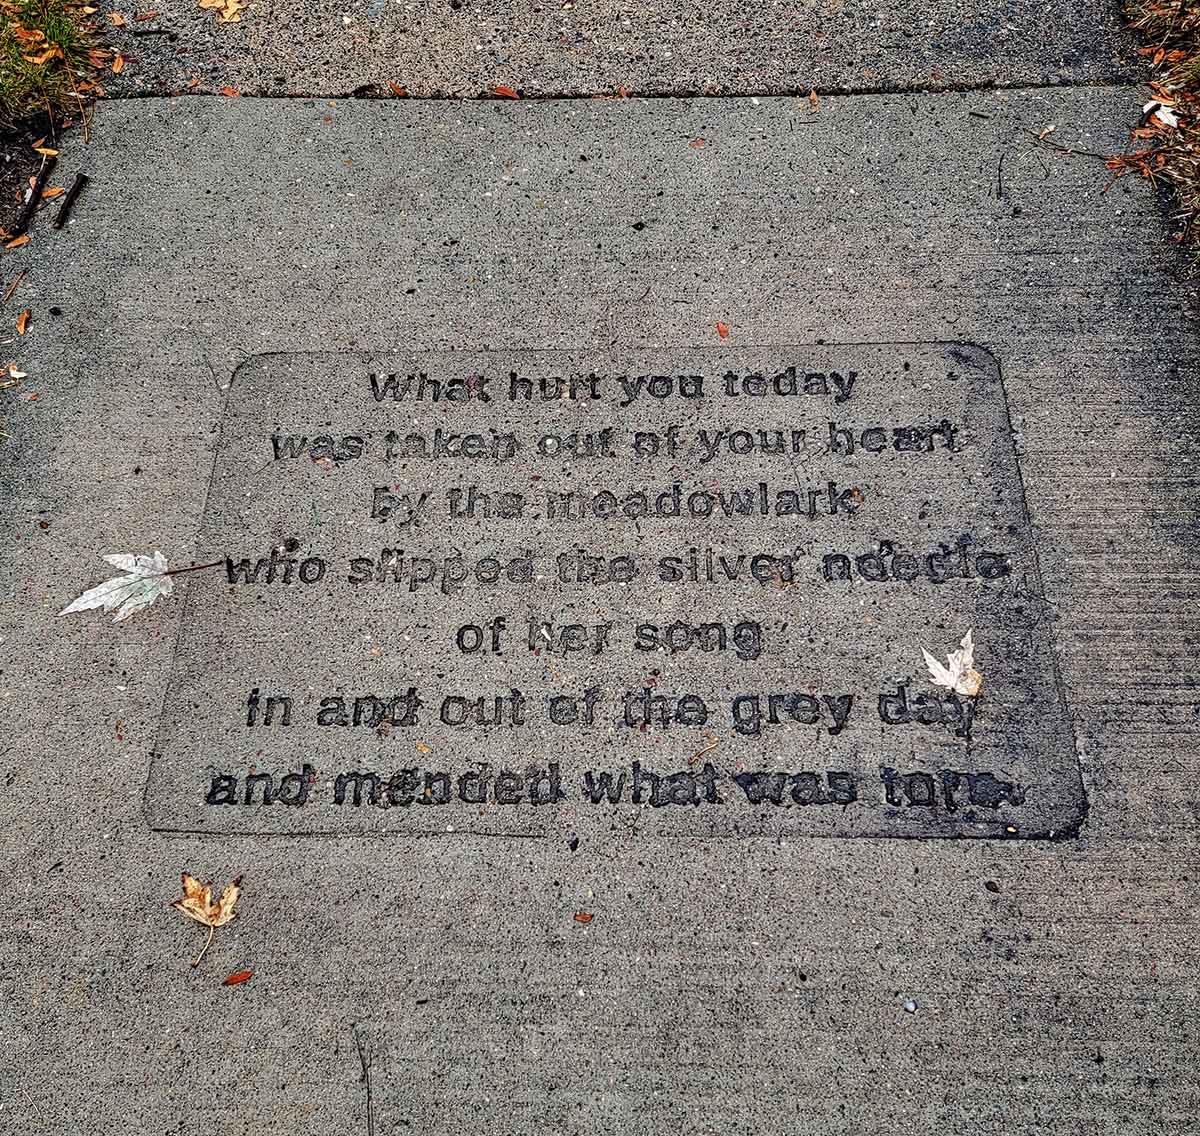 A poem embedded in the sidewalk.